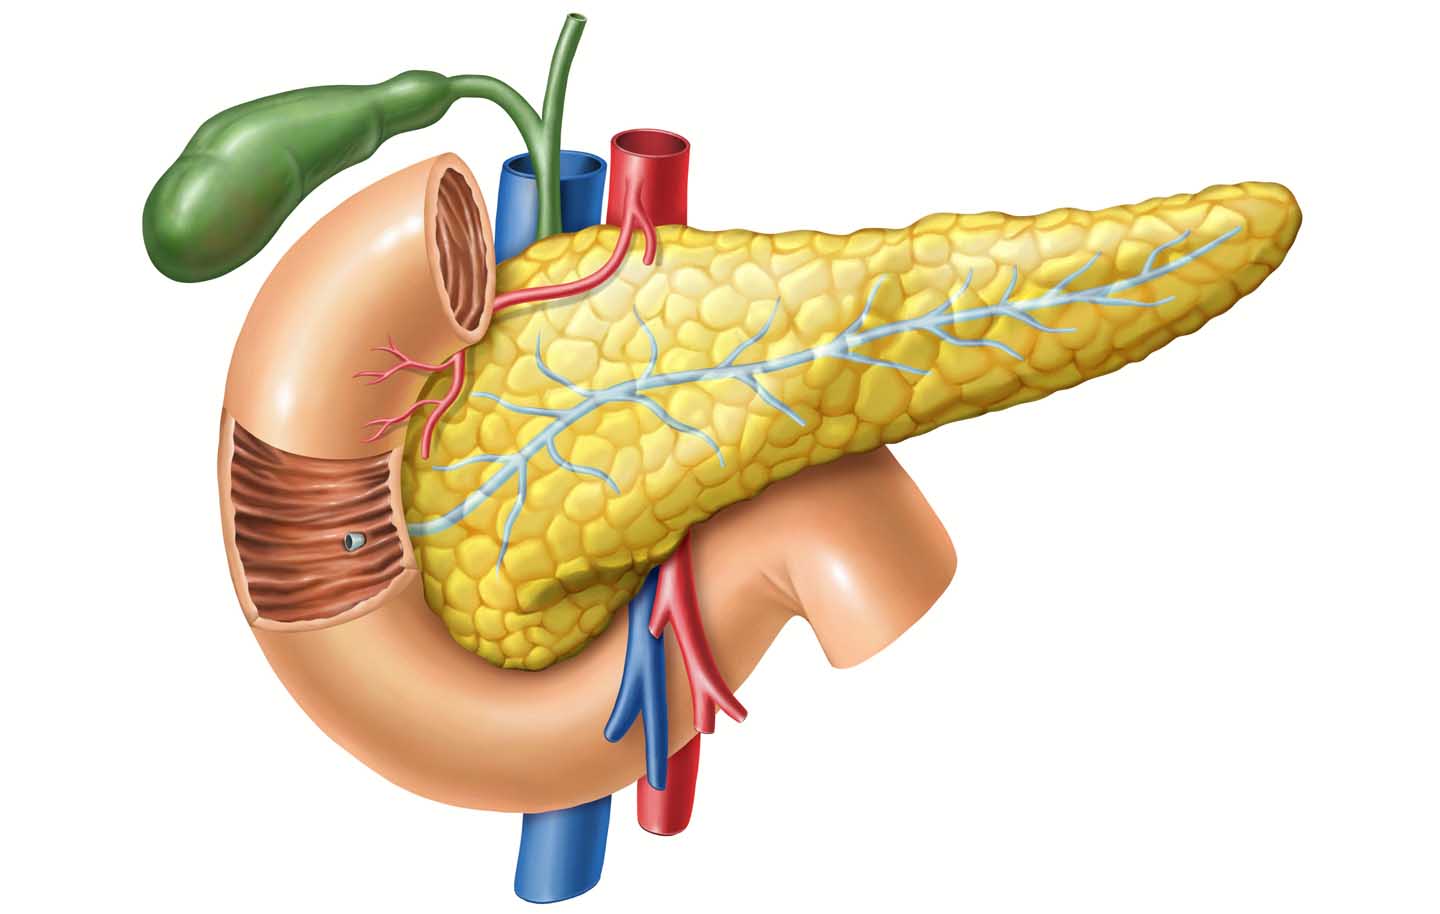 Desenho anatômico do pâncreas junto com o ducto biliar